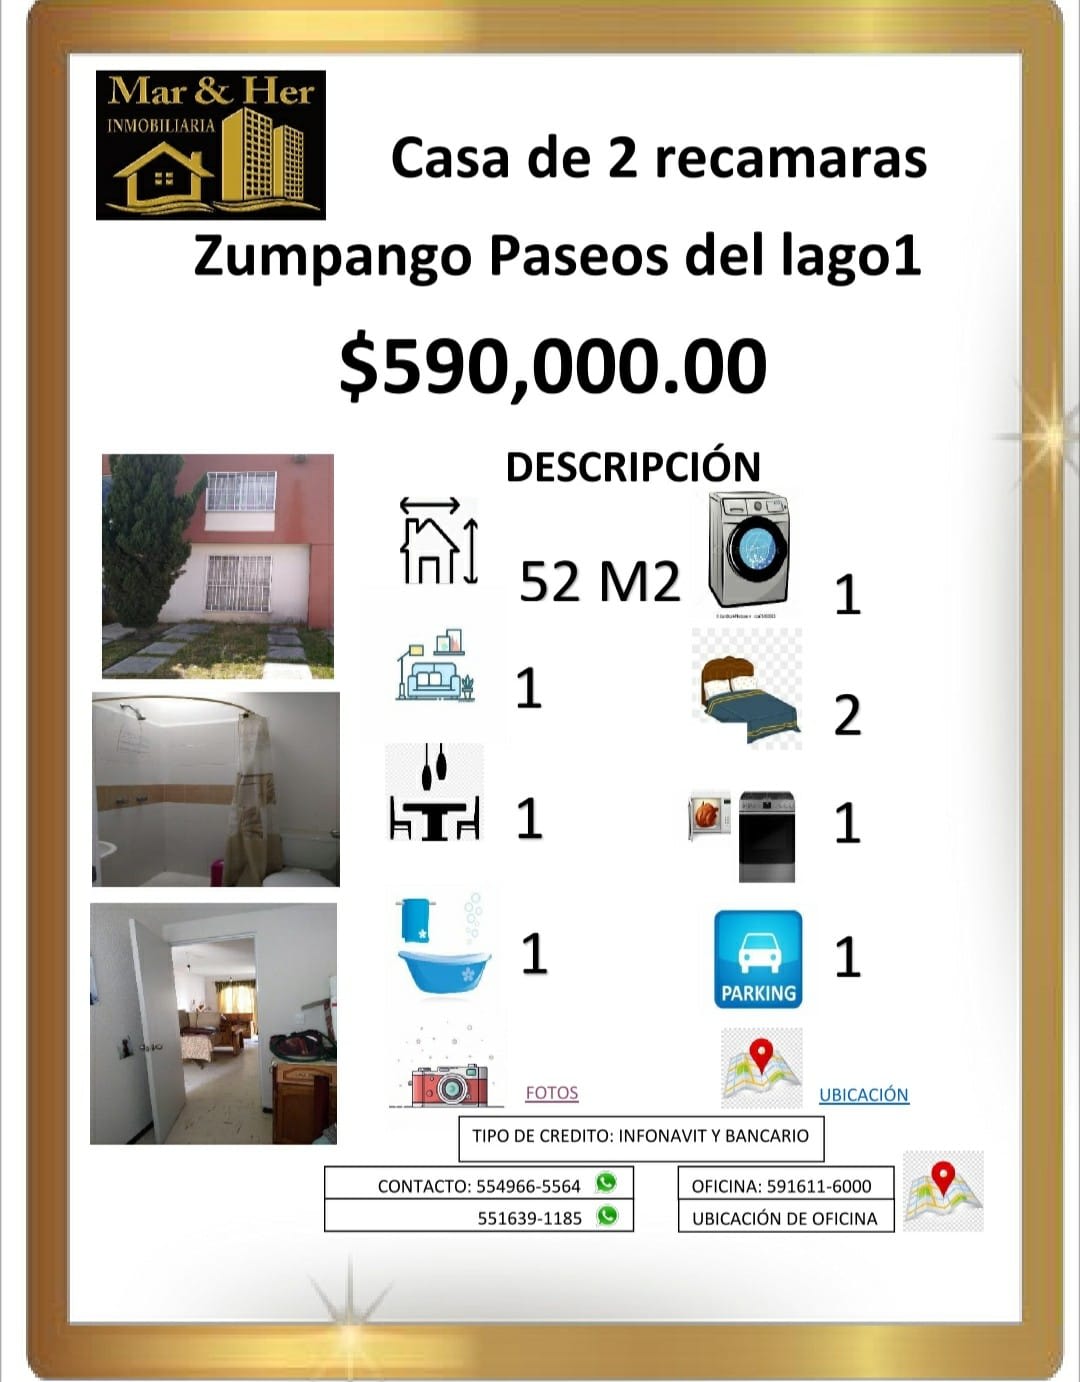 Casa Zumpango, Paseos de lago 1 - Renta y venta de inmuebles - Inmobiliaria  Mar & Her - Bienes raíces | Zumpango